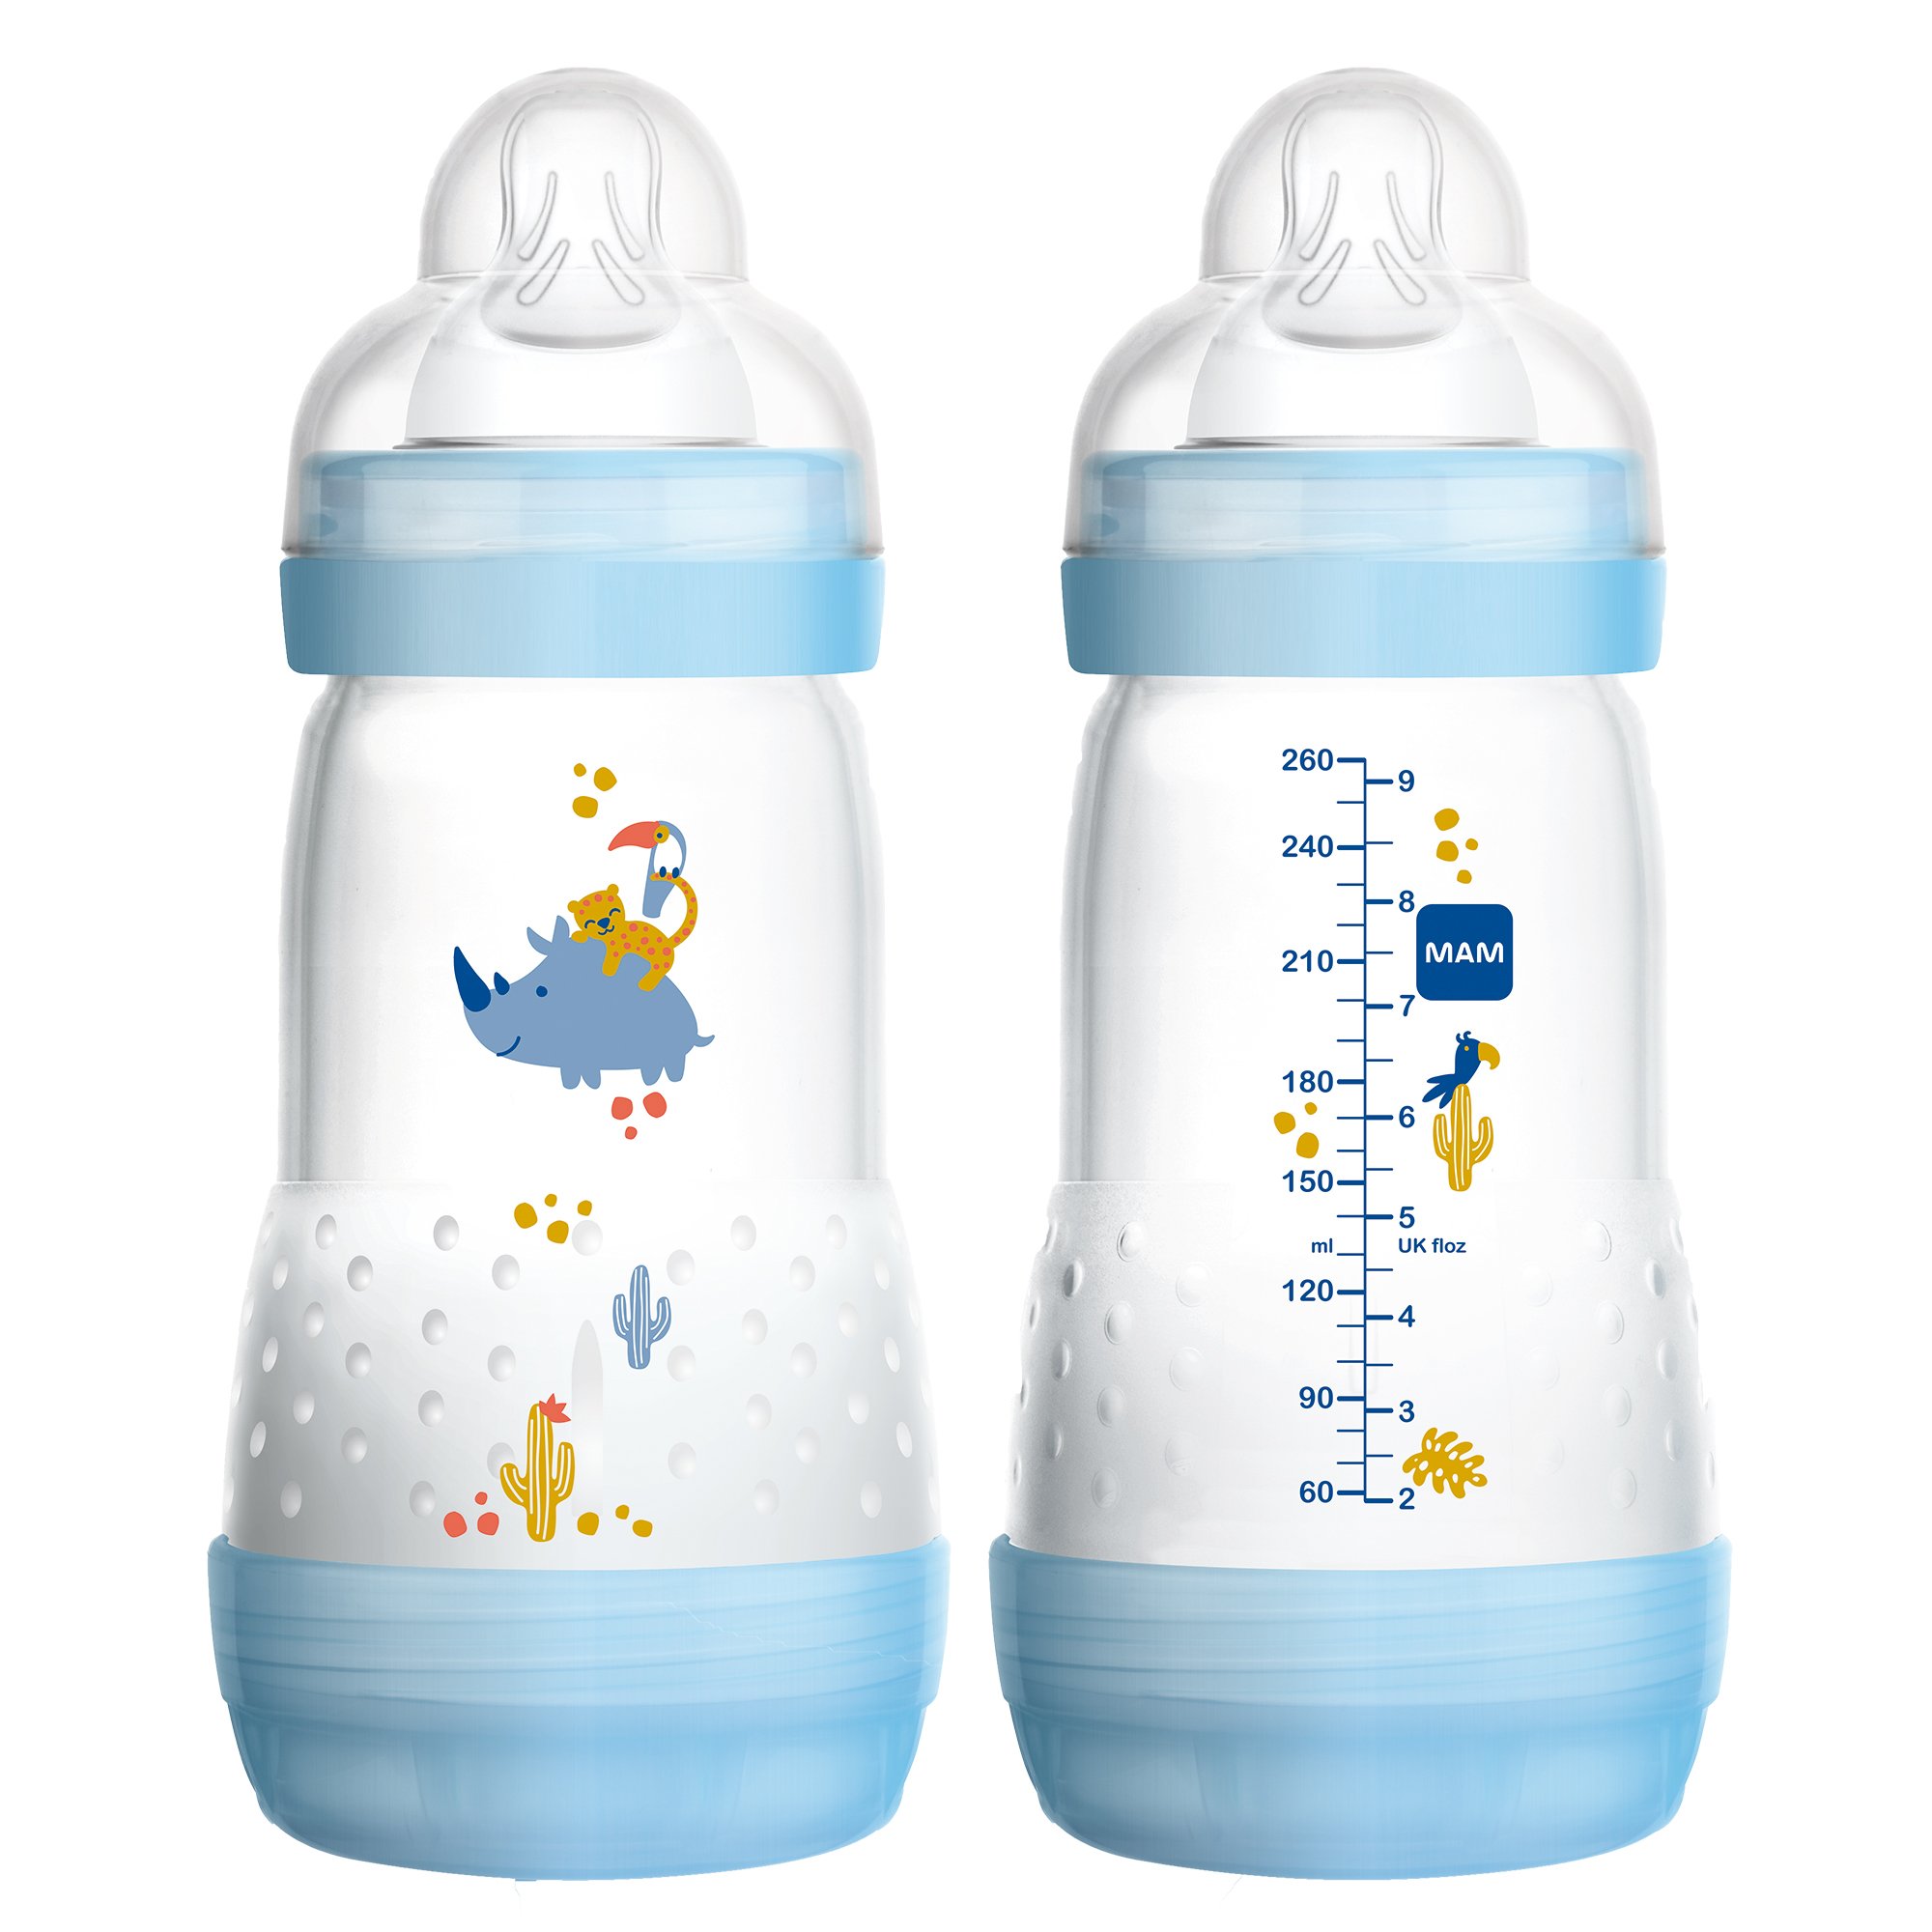 MAM Baby Bottles for Breastfed Babies, MAM Baby Bottles Anti